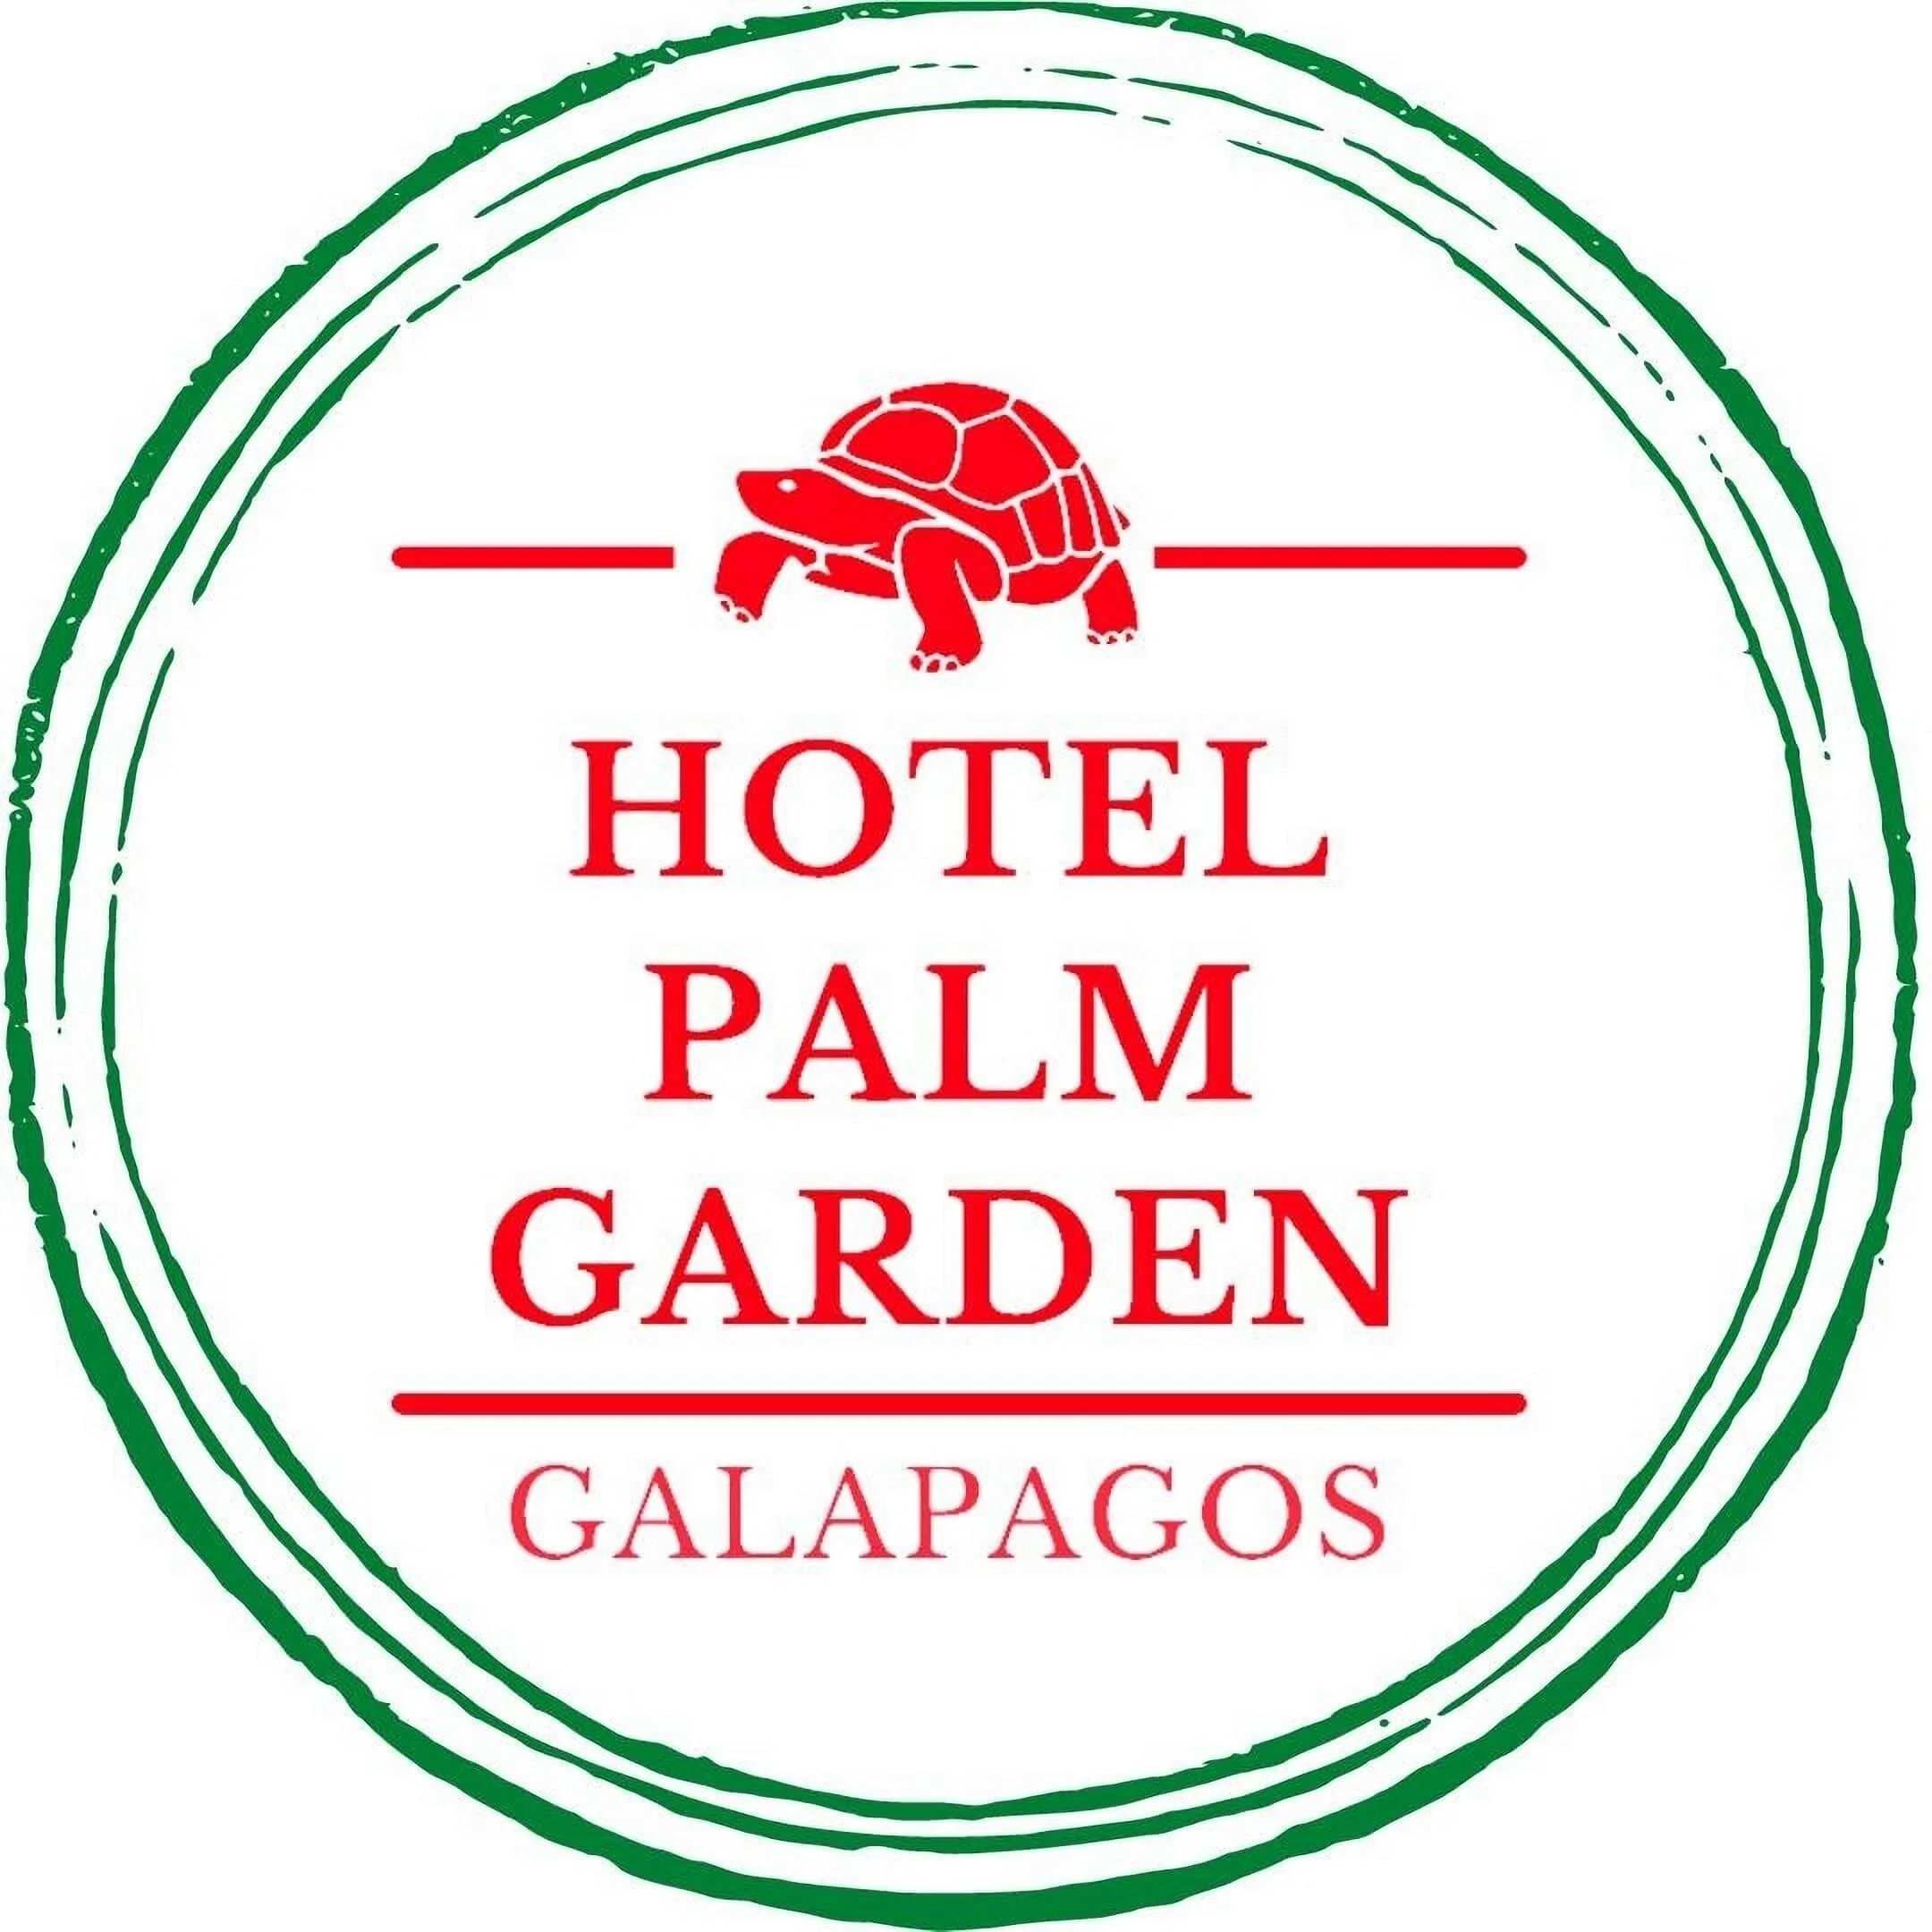 Hoteles-hotel-palm-garden-galapagos-13759